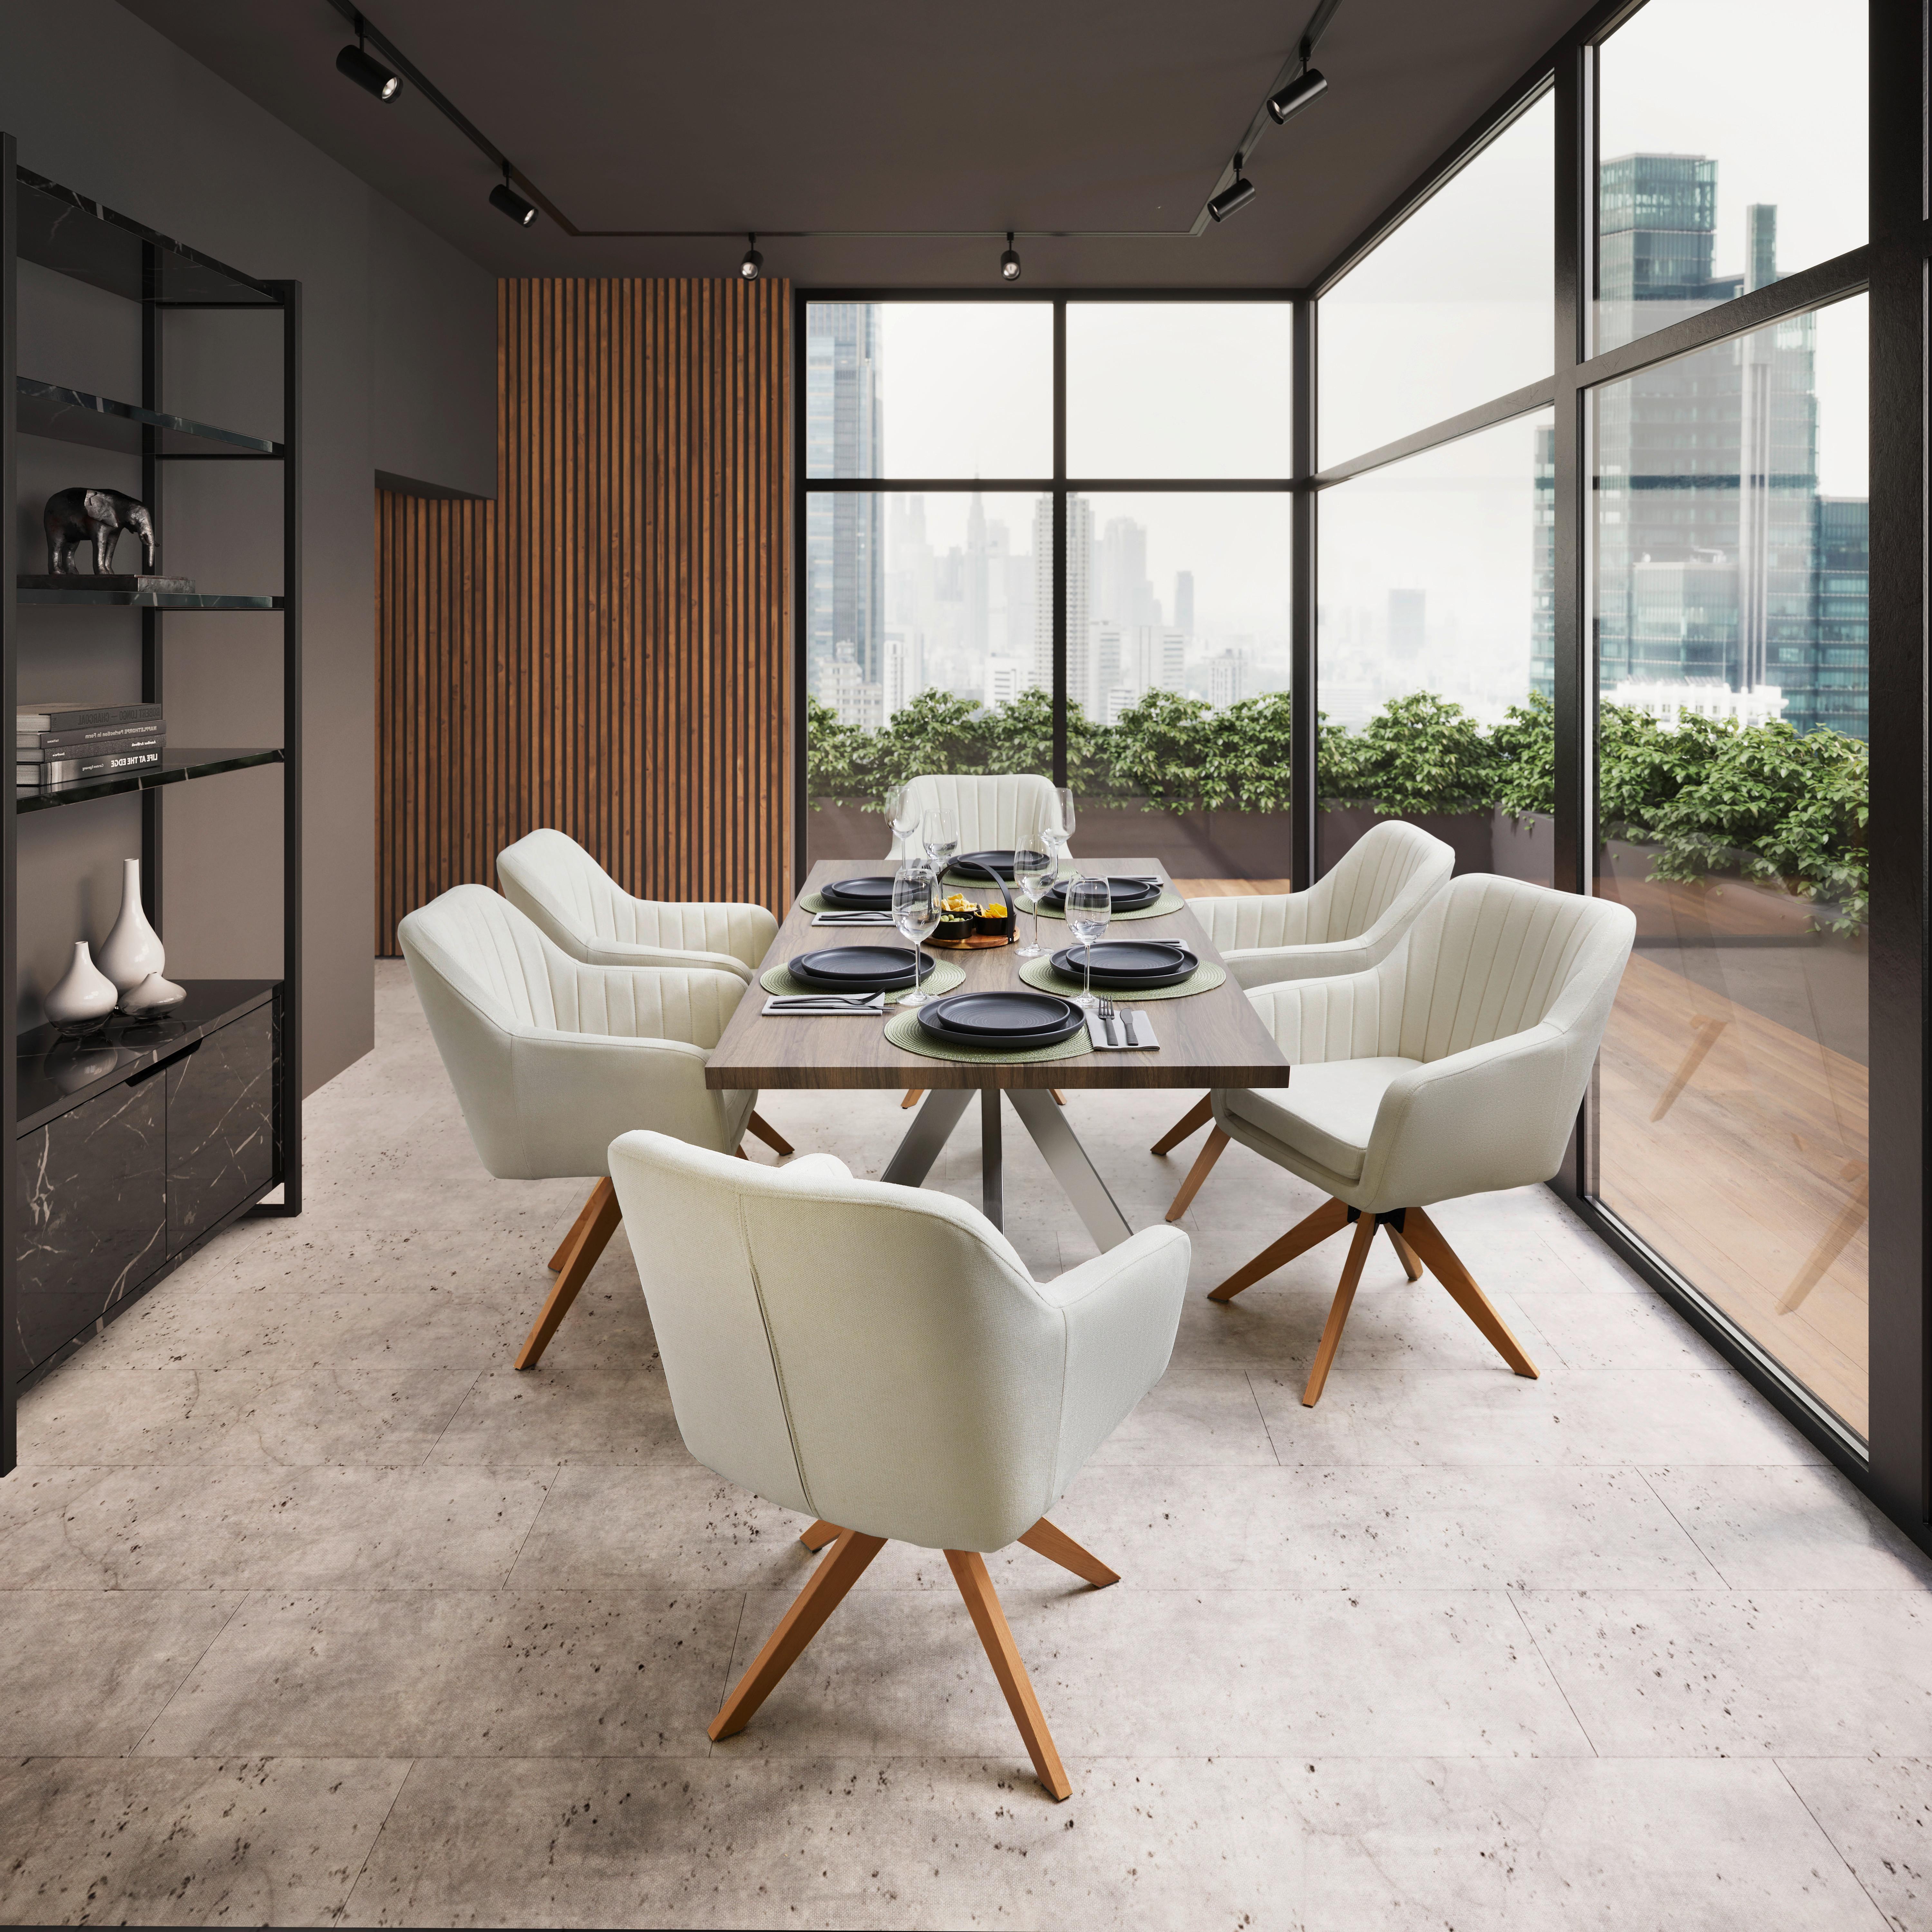 Jídelní Stůl Ilias 180x90 Cm - barvy stříbra/barvy vlašských ořechů, Moderní, kov/dřevo (180/90/76cm) - Bessagi Home